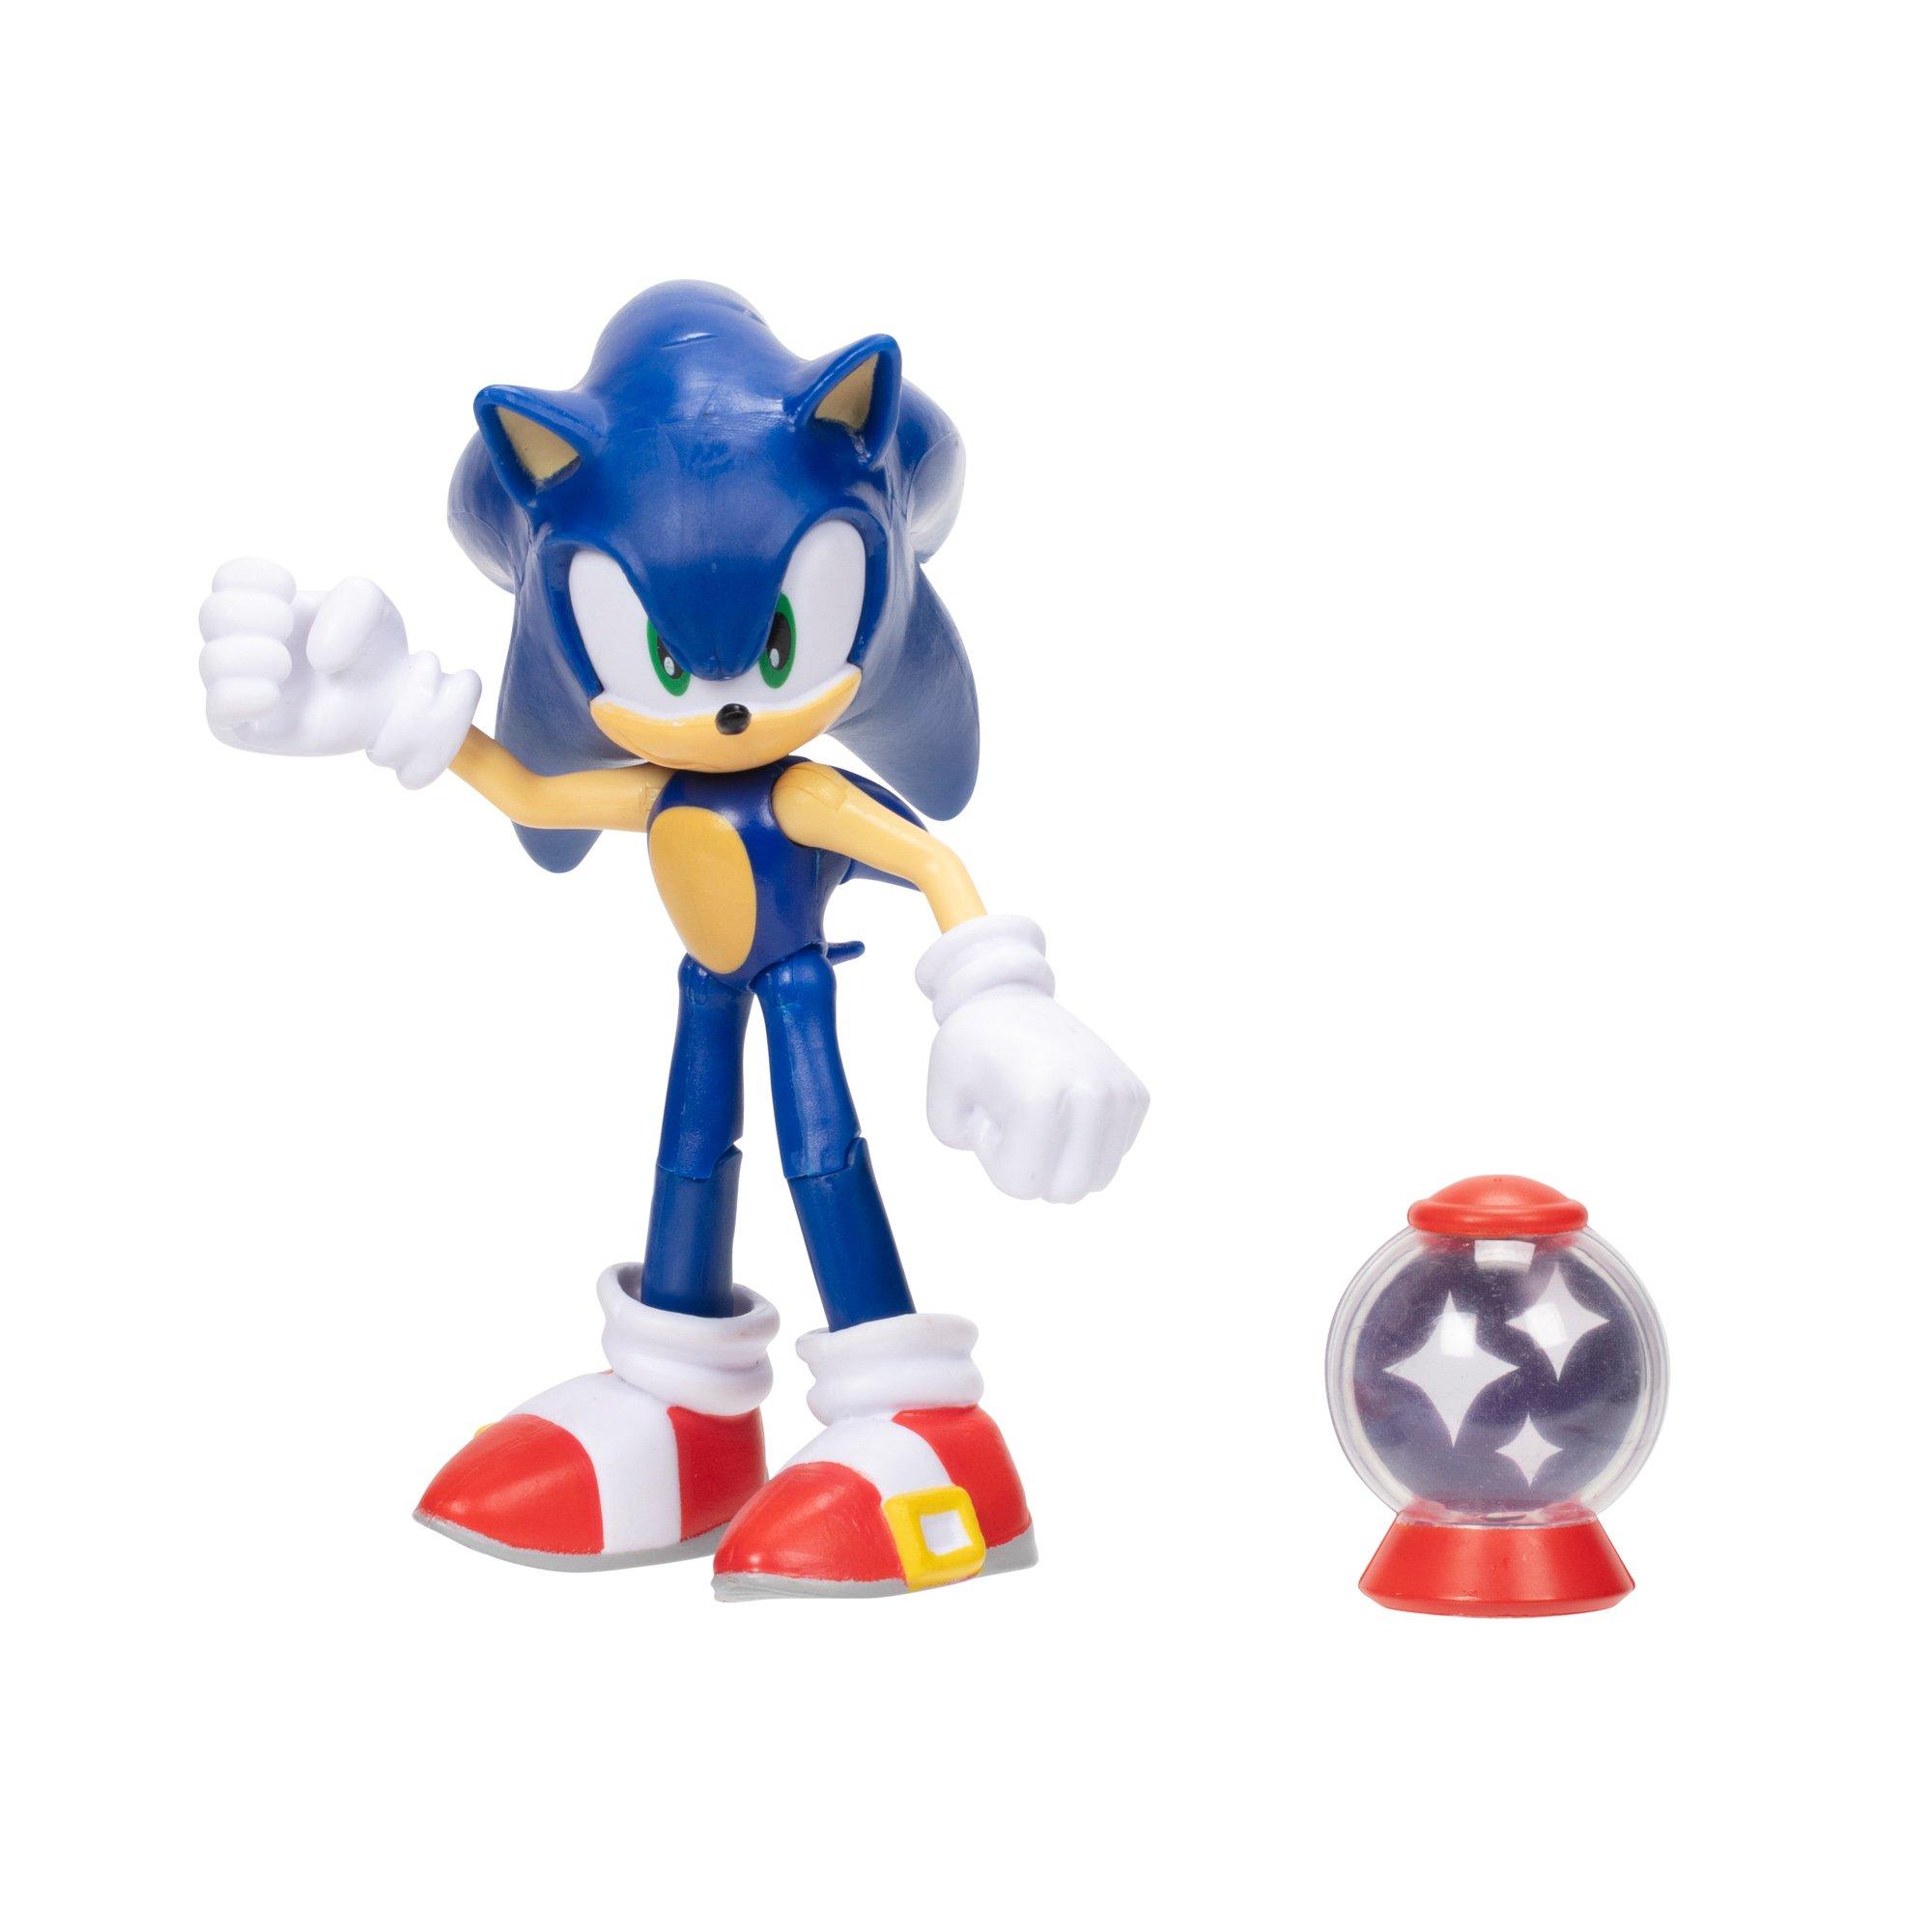 Boneco Colecionável Action Figure Super Sonic e Esmeralda Do Caos: Sonic  The Hedgehog - Jakks Pacific - Toyshow Tudo de Marvel DC Netflix Geek Funko  Pop Colecionáveis